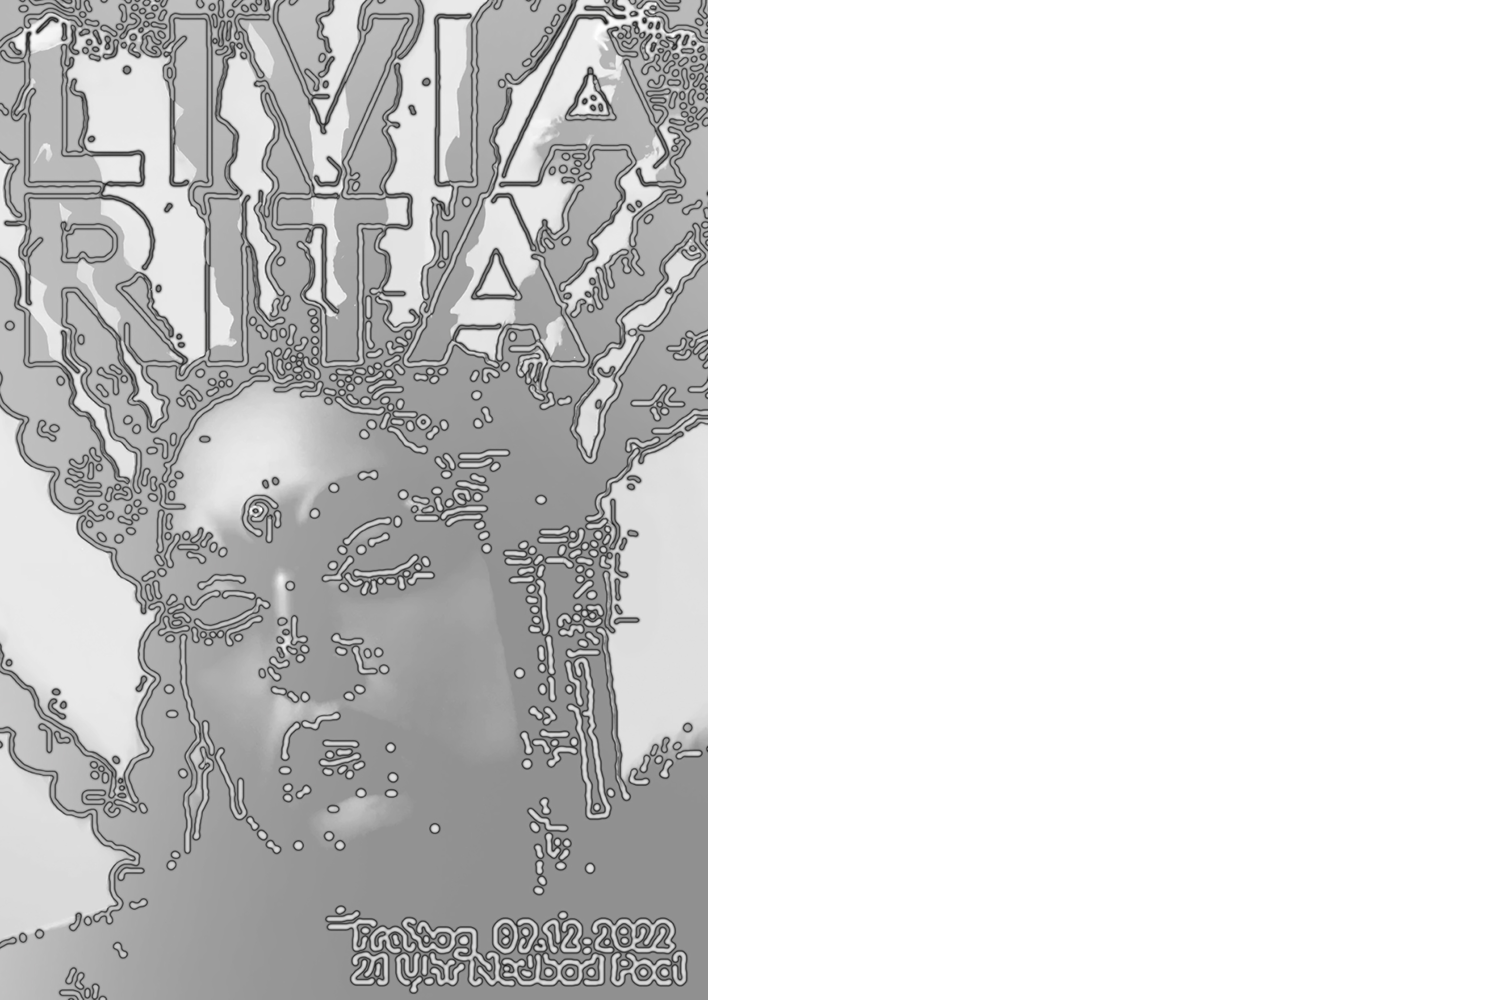 Man sieht auf dem Plakat den Kopf einer Frau mit einem schwarz-weiss abstrahierenden Filter über der Fotografie. Die Konturen sind mit Punken und Strichen umrandet. Der Titel lautet Livia Rita.